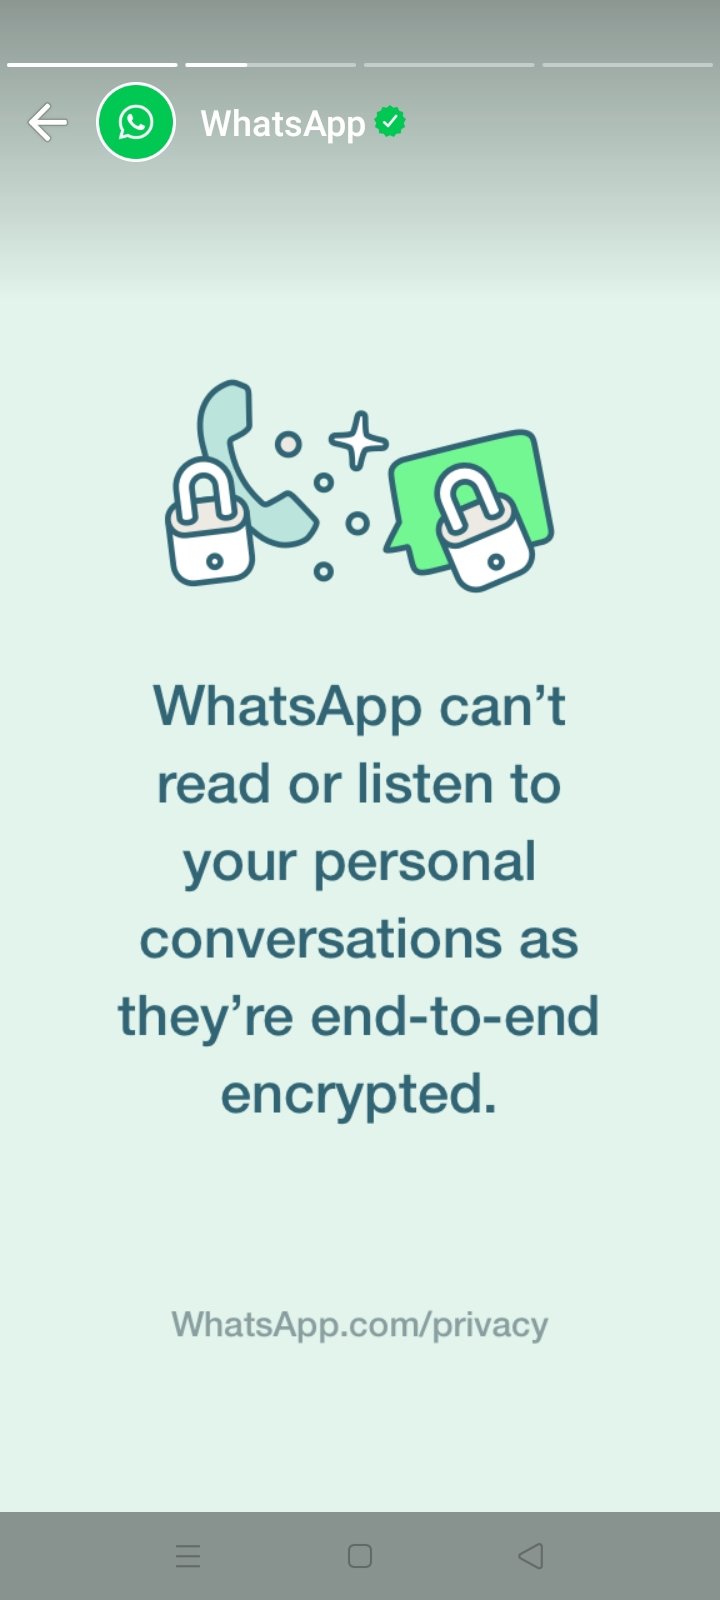 whatsapp-privacy-2.jfif